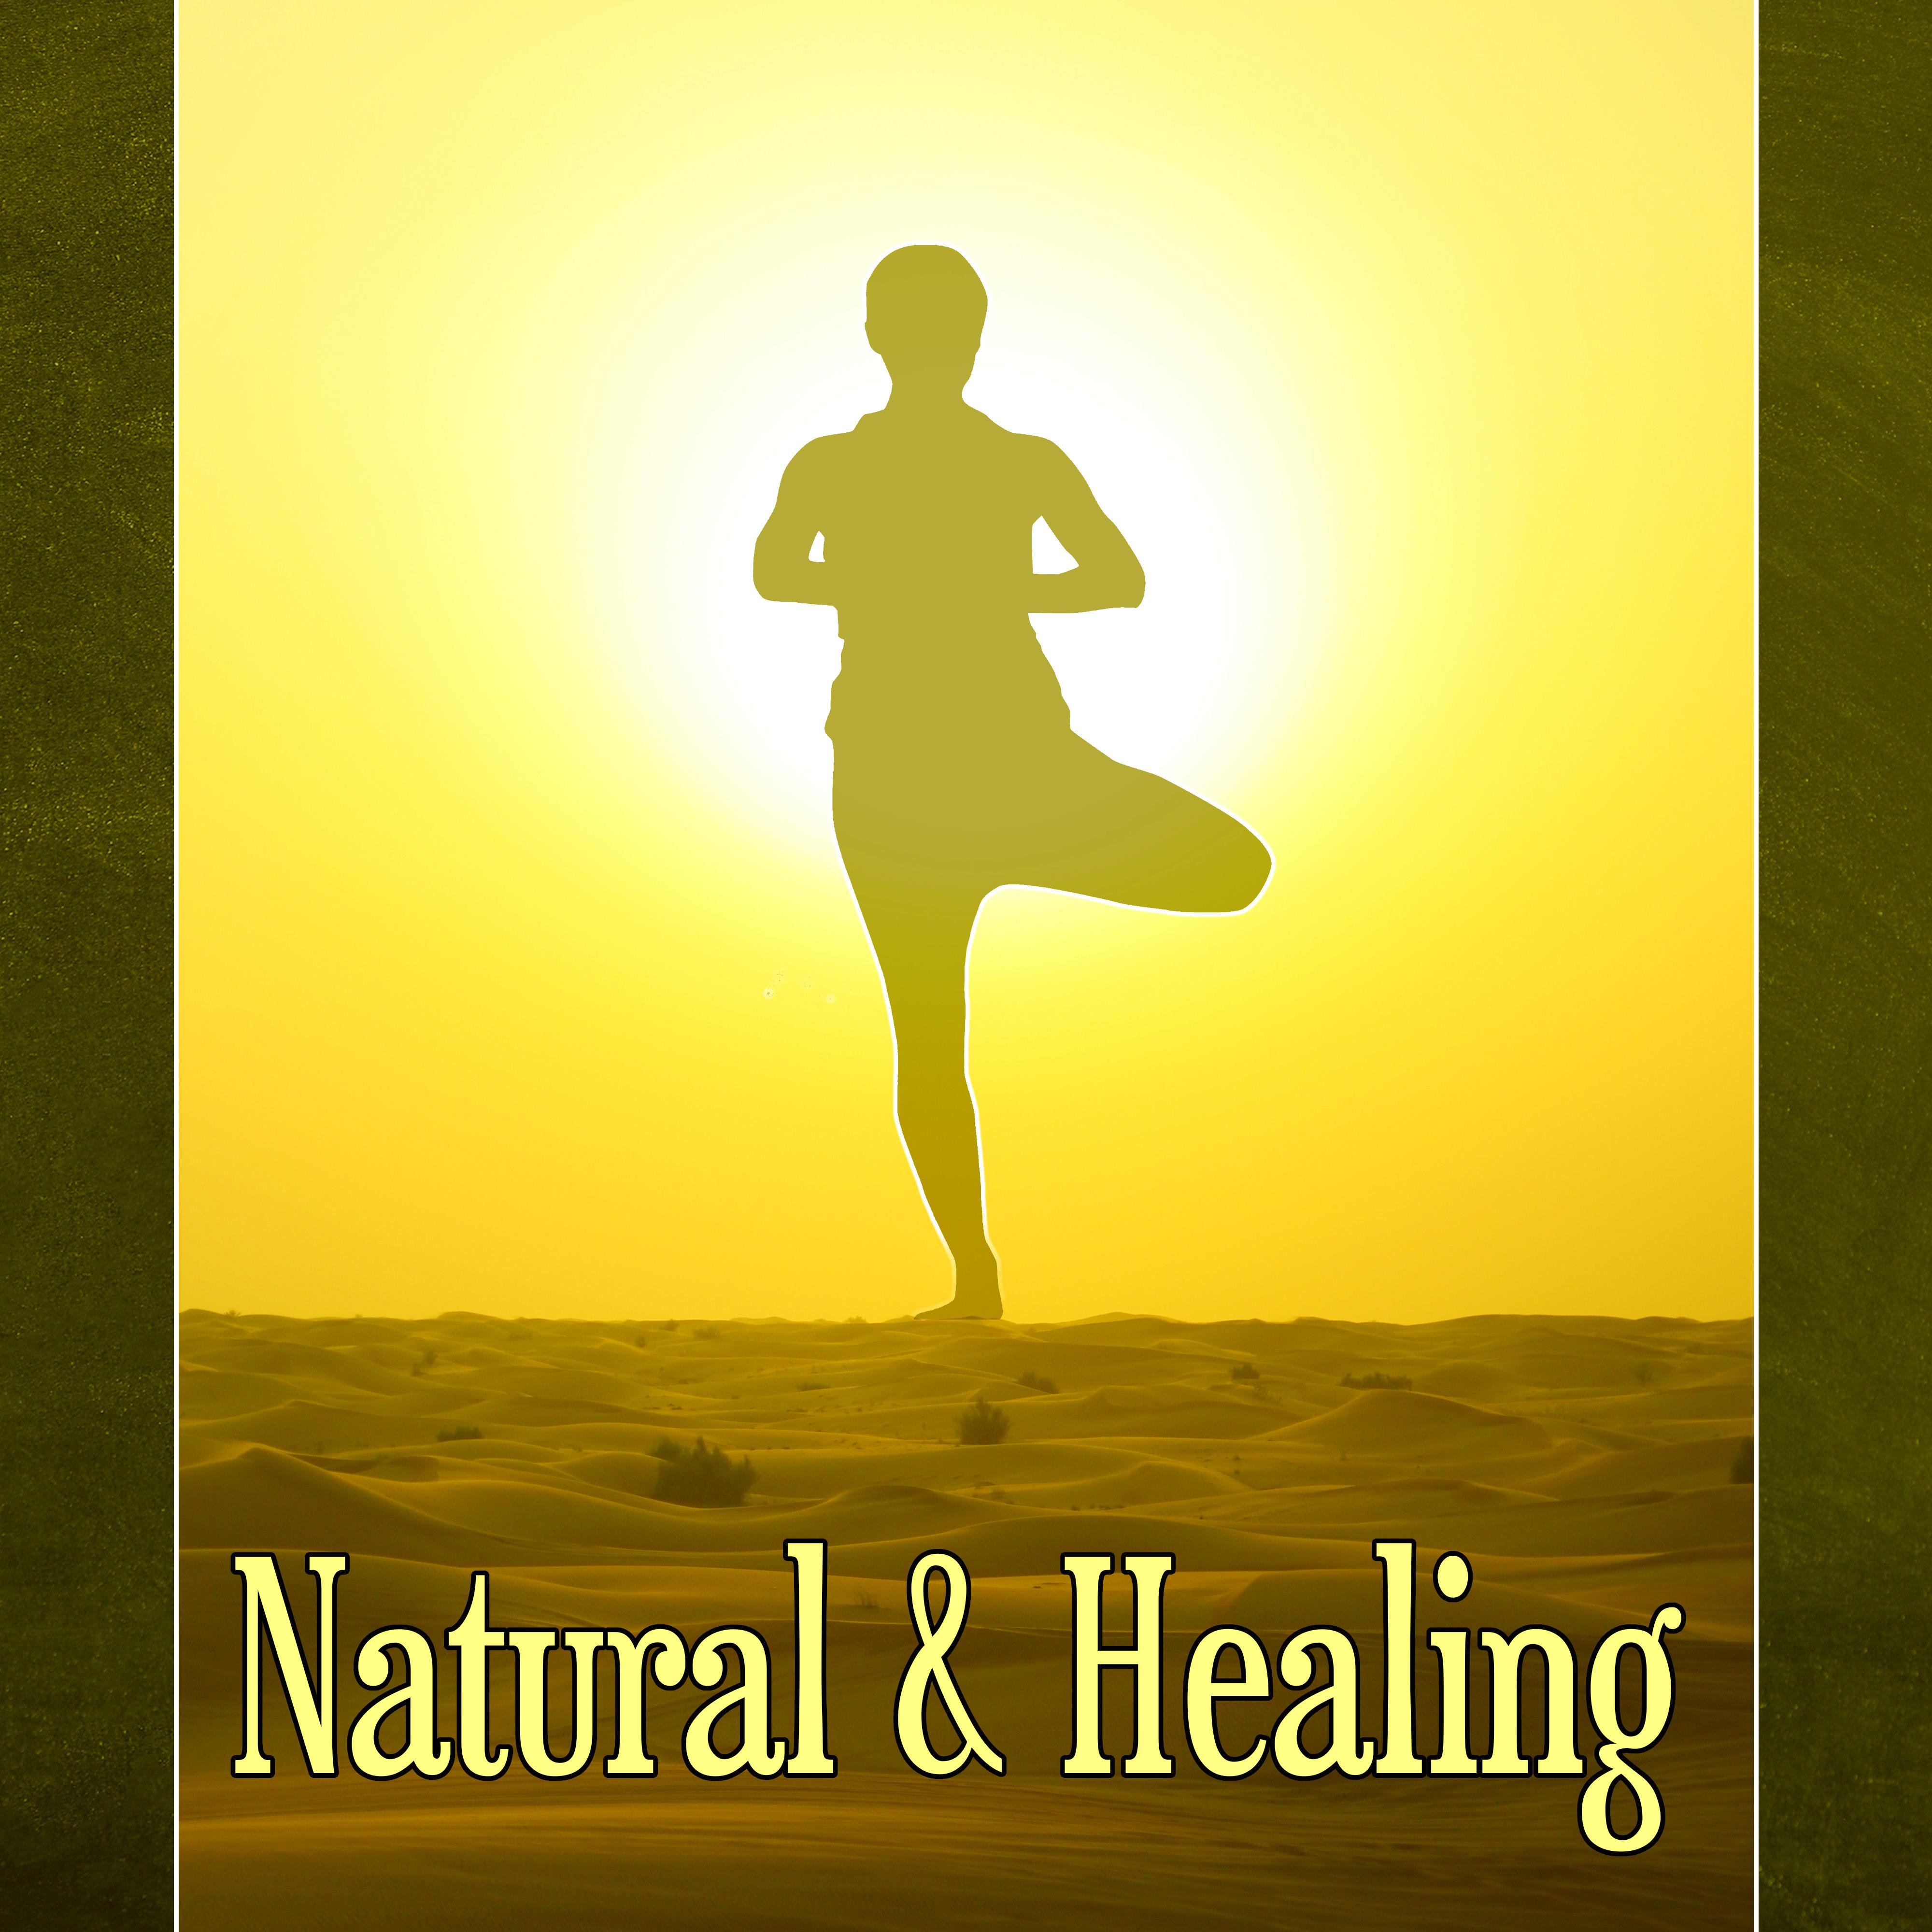 Natural  Healing  Natural Spa Adventure, Healing Massage, Peaceful Music for Deep Zen Meditation  Well Being